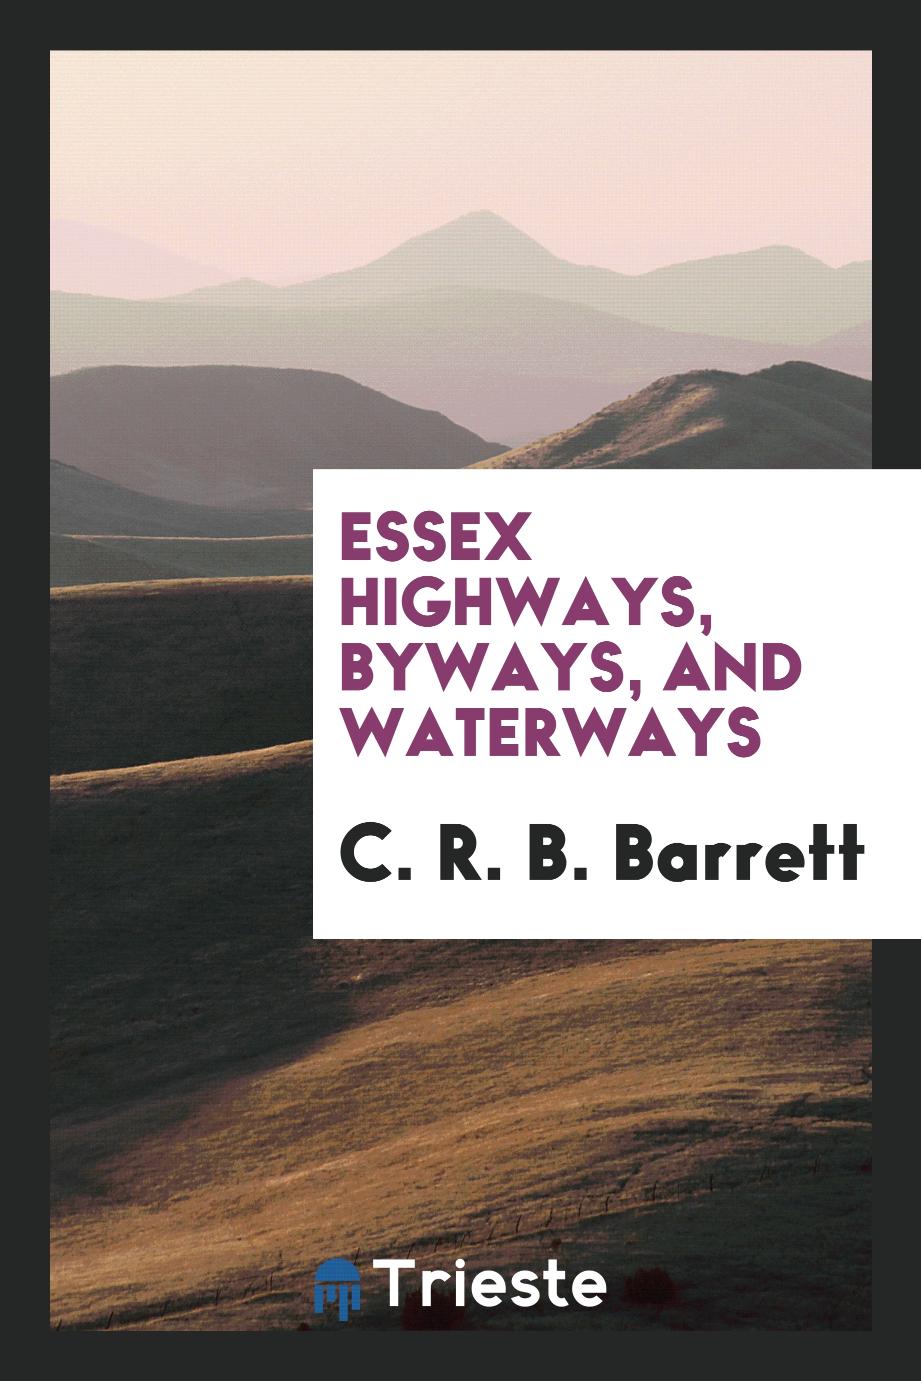 Essex highways, byways, and waterways